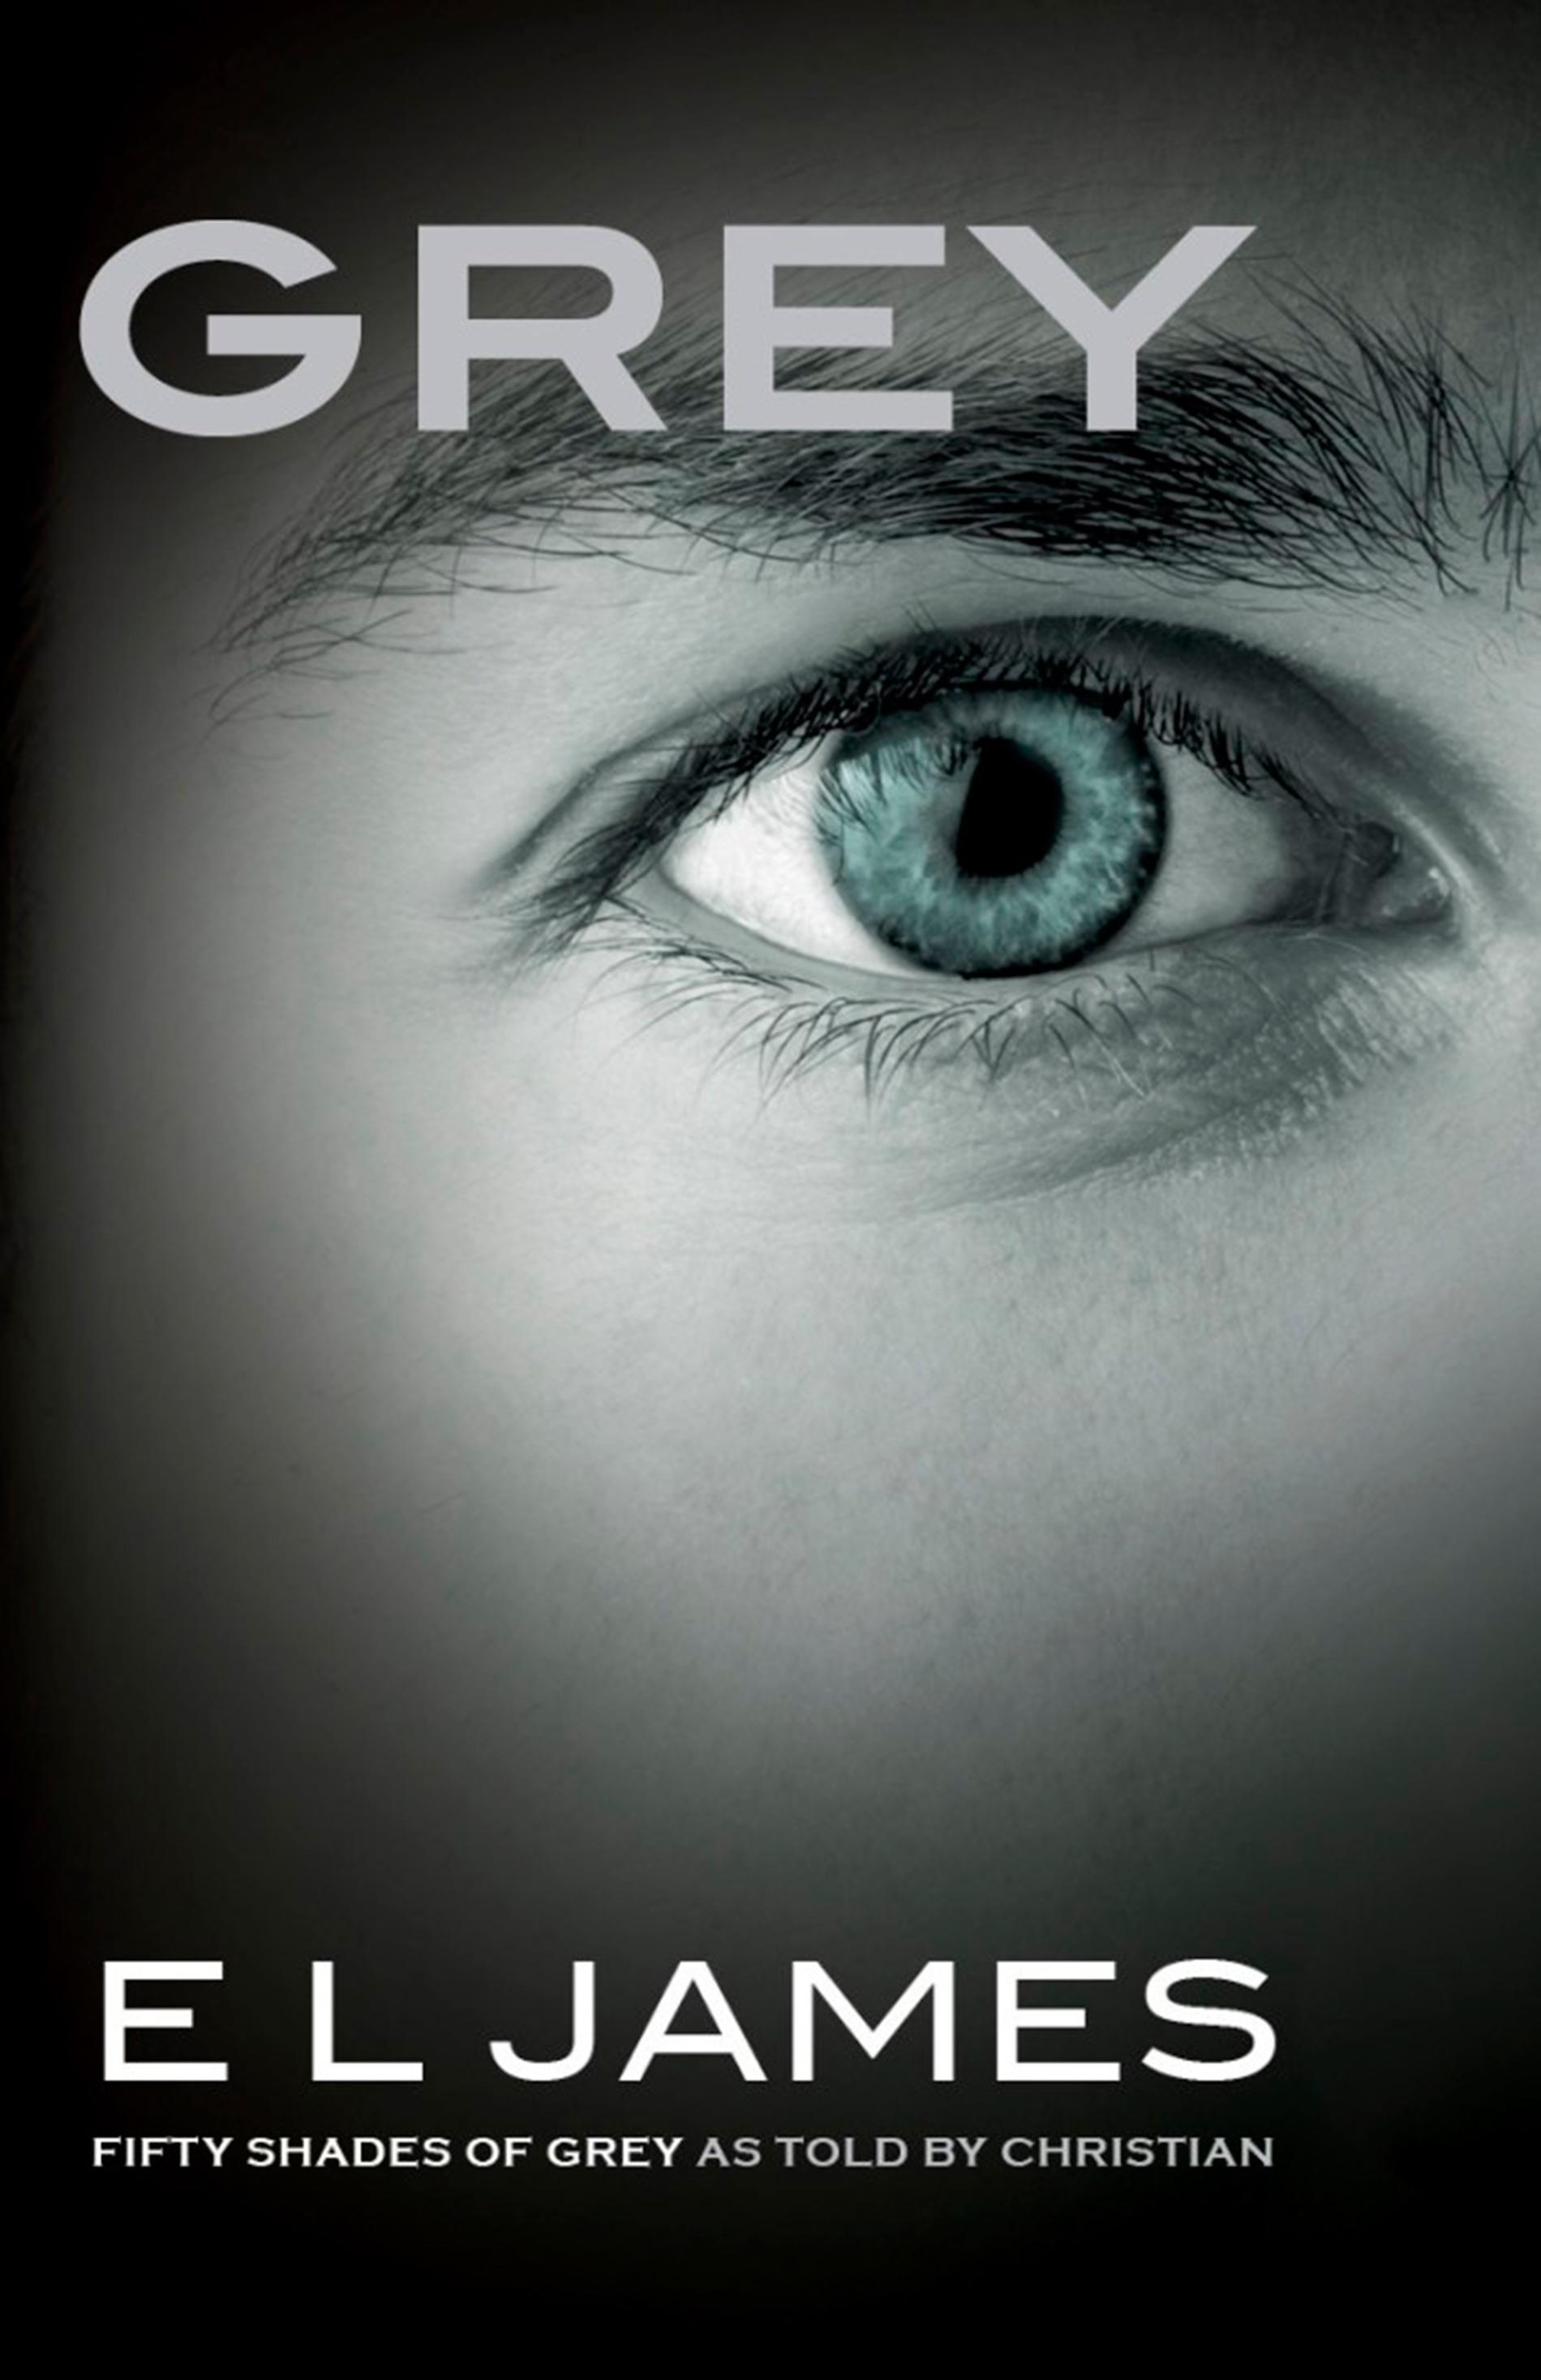 Omslaget till nya ”Fifty shades”-boken, ur karaktären Christian Greys synvinkel.